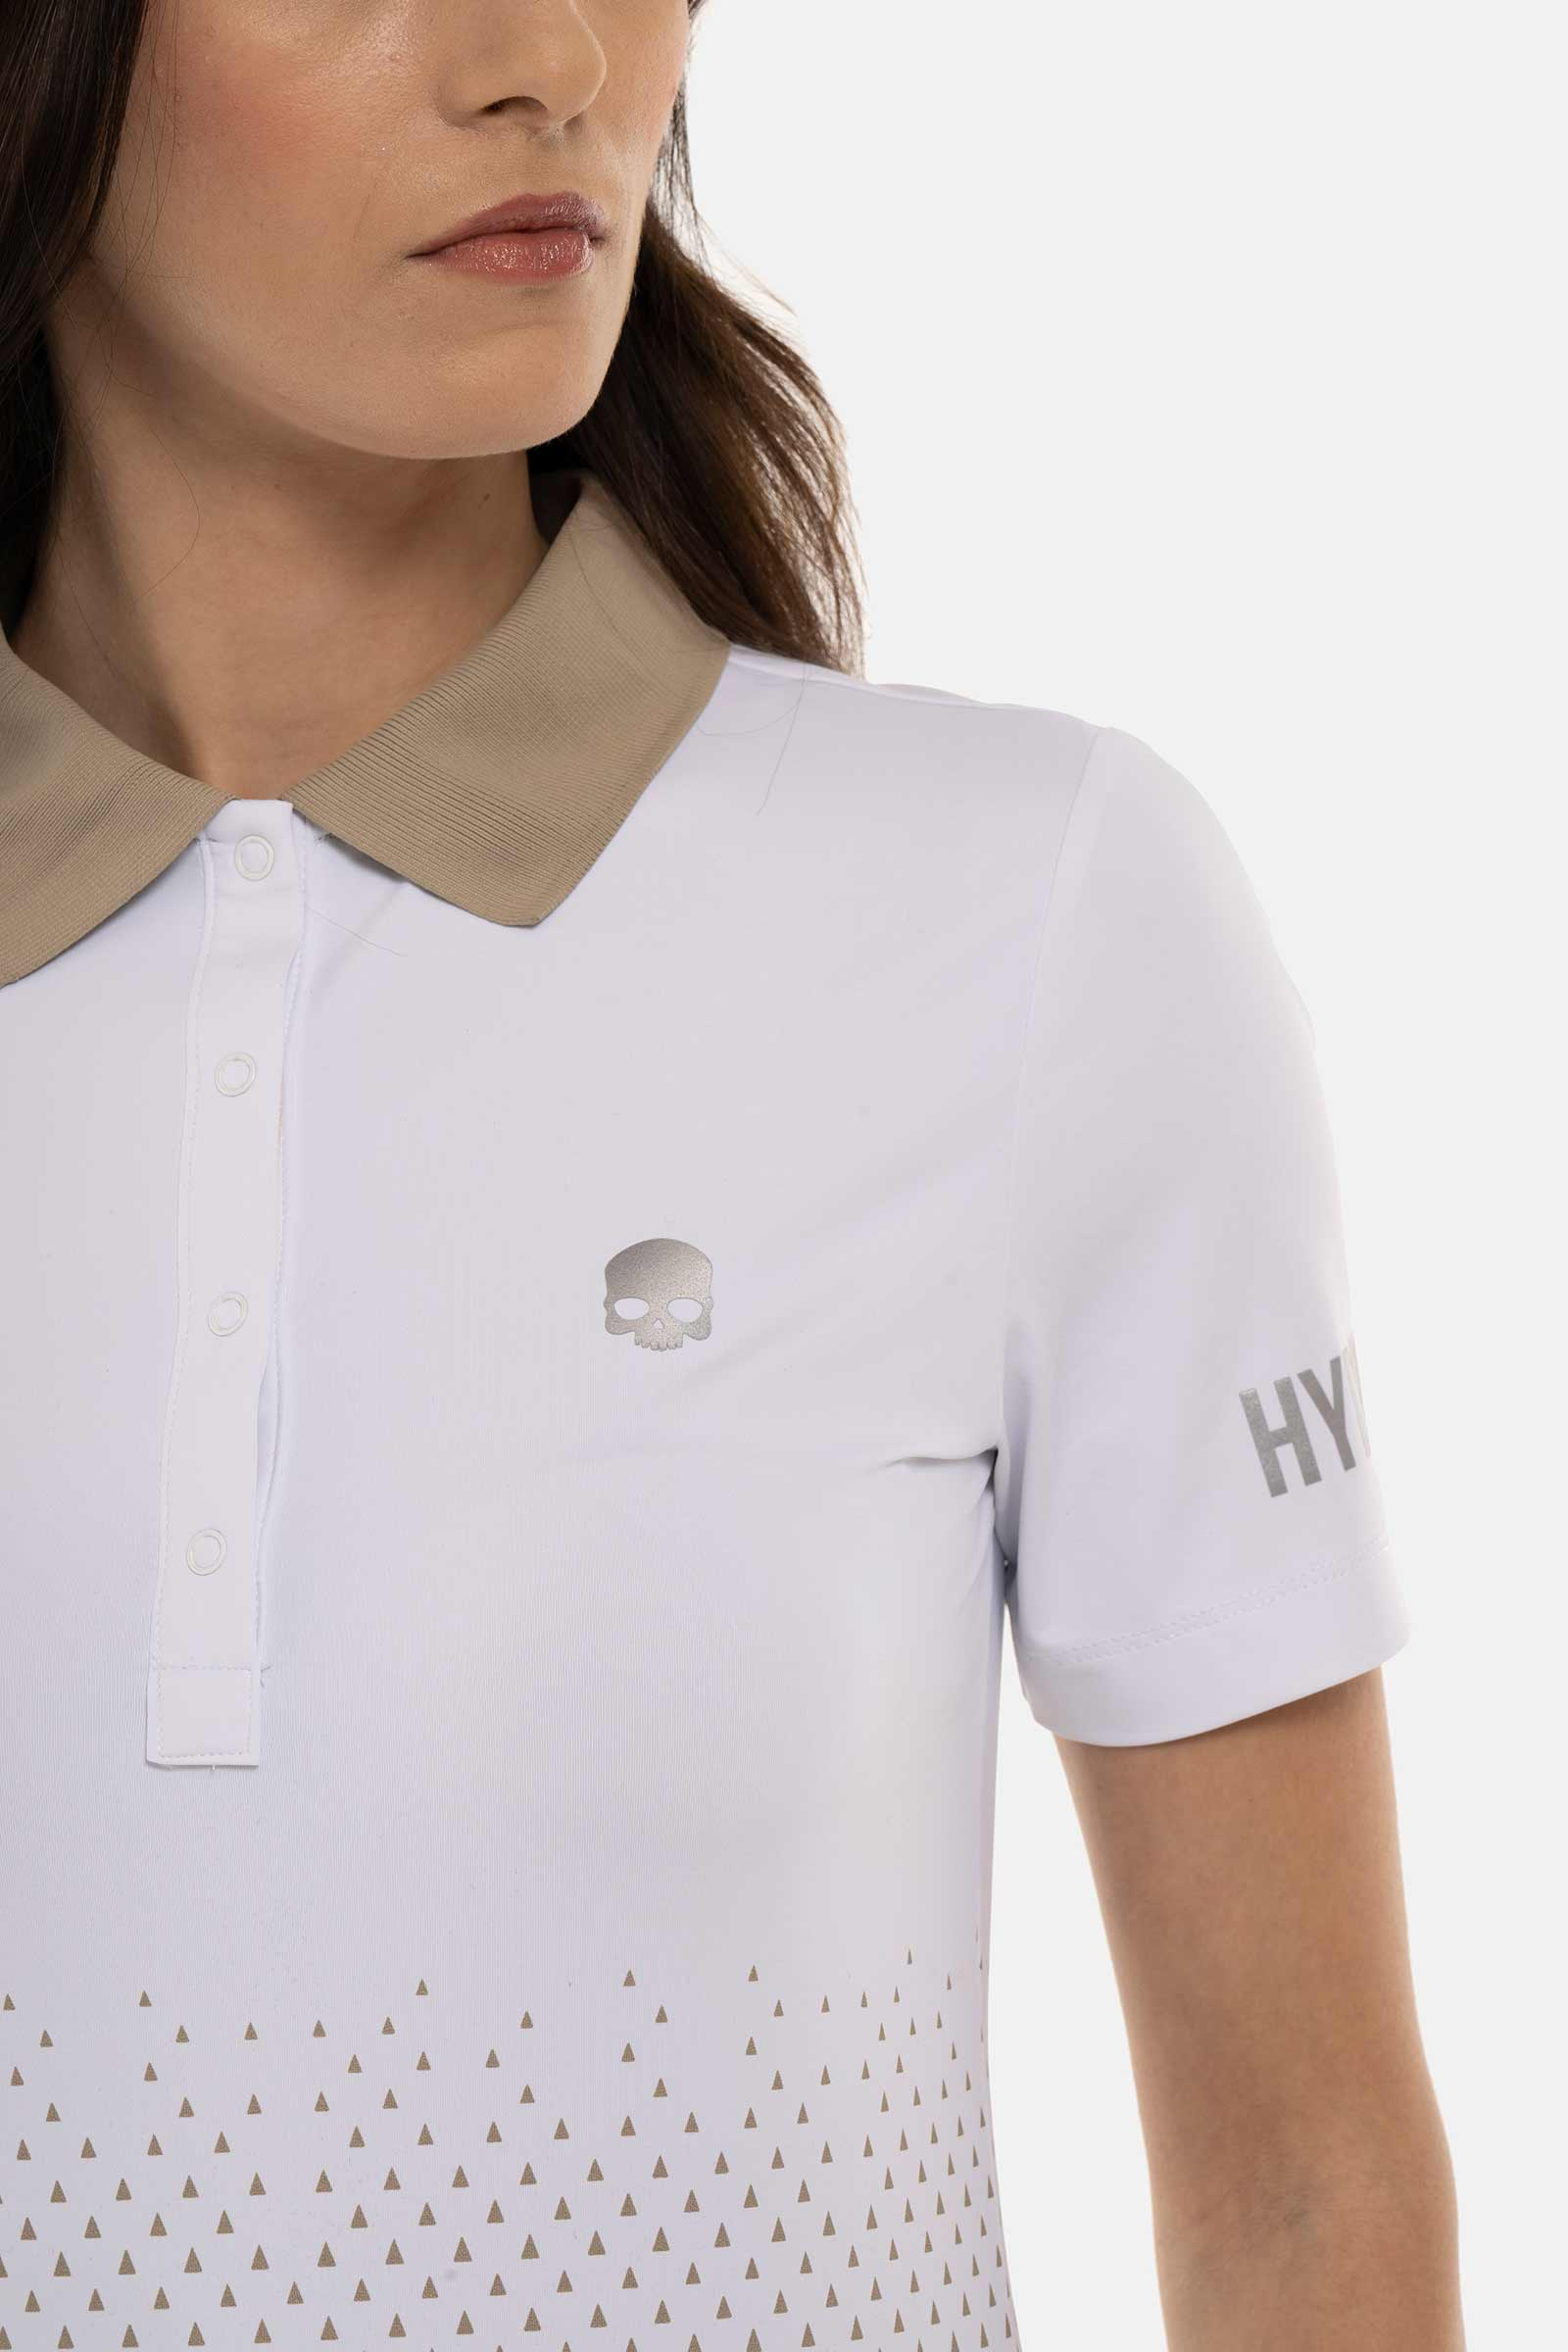 GEOMETRIC DEGRADE’ TECH POLO - WHITE,BEIGE - Hydrogen - Luxury Sportwear